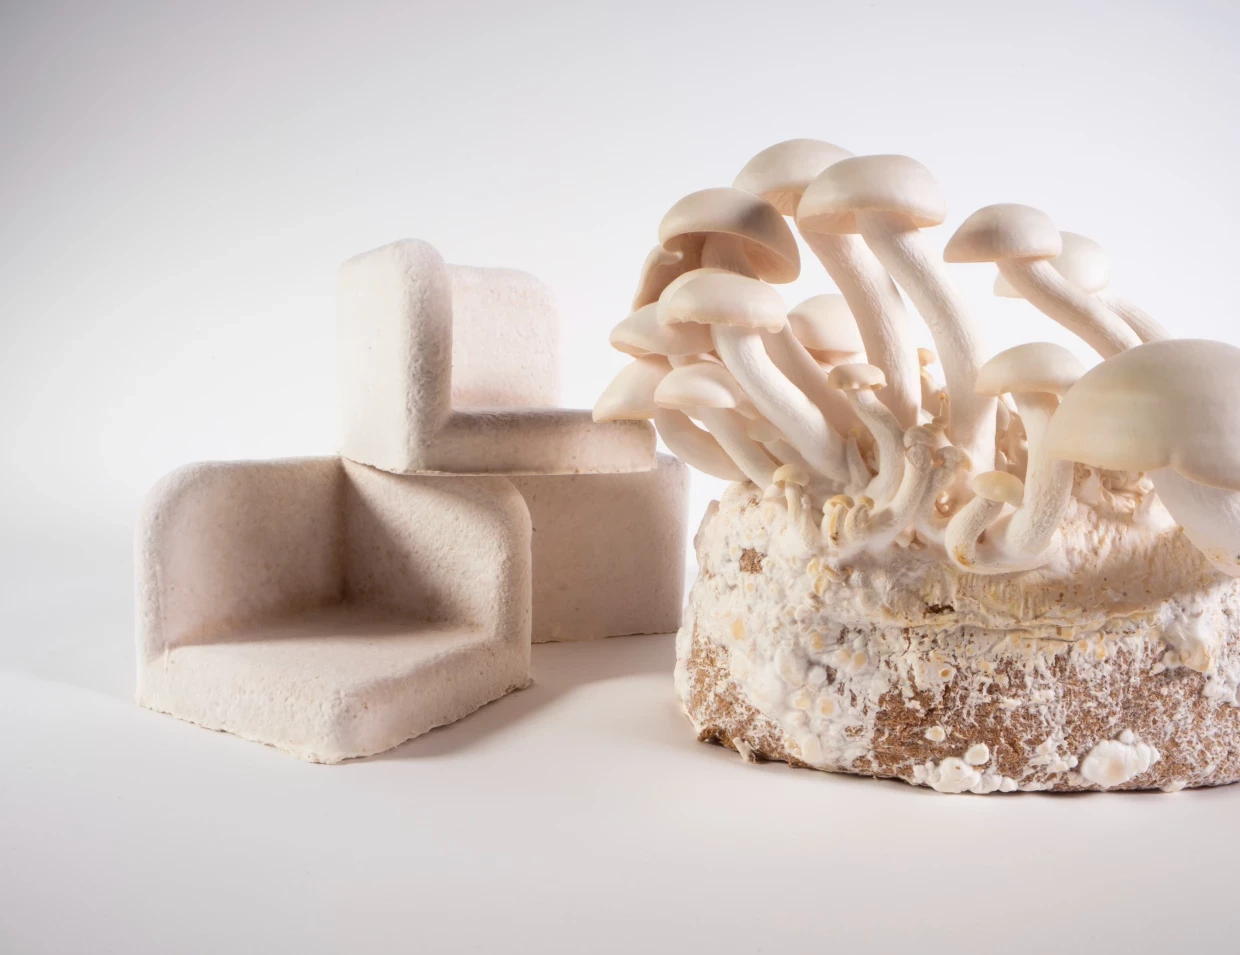 Mycelium Materials